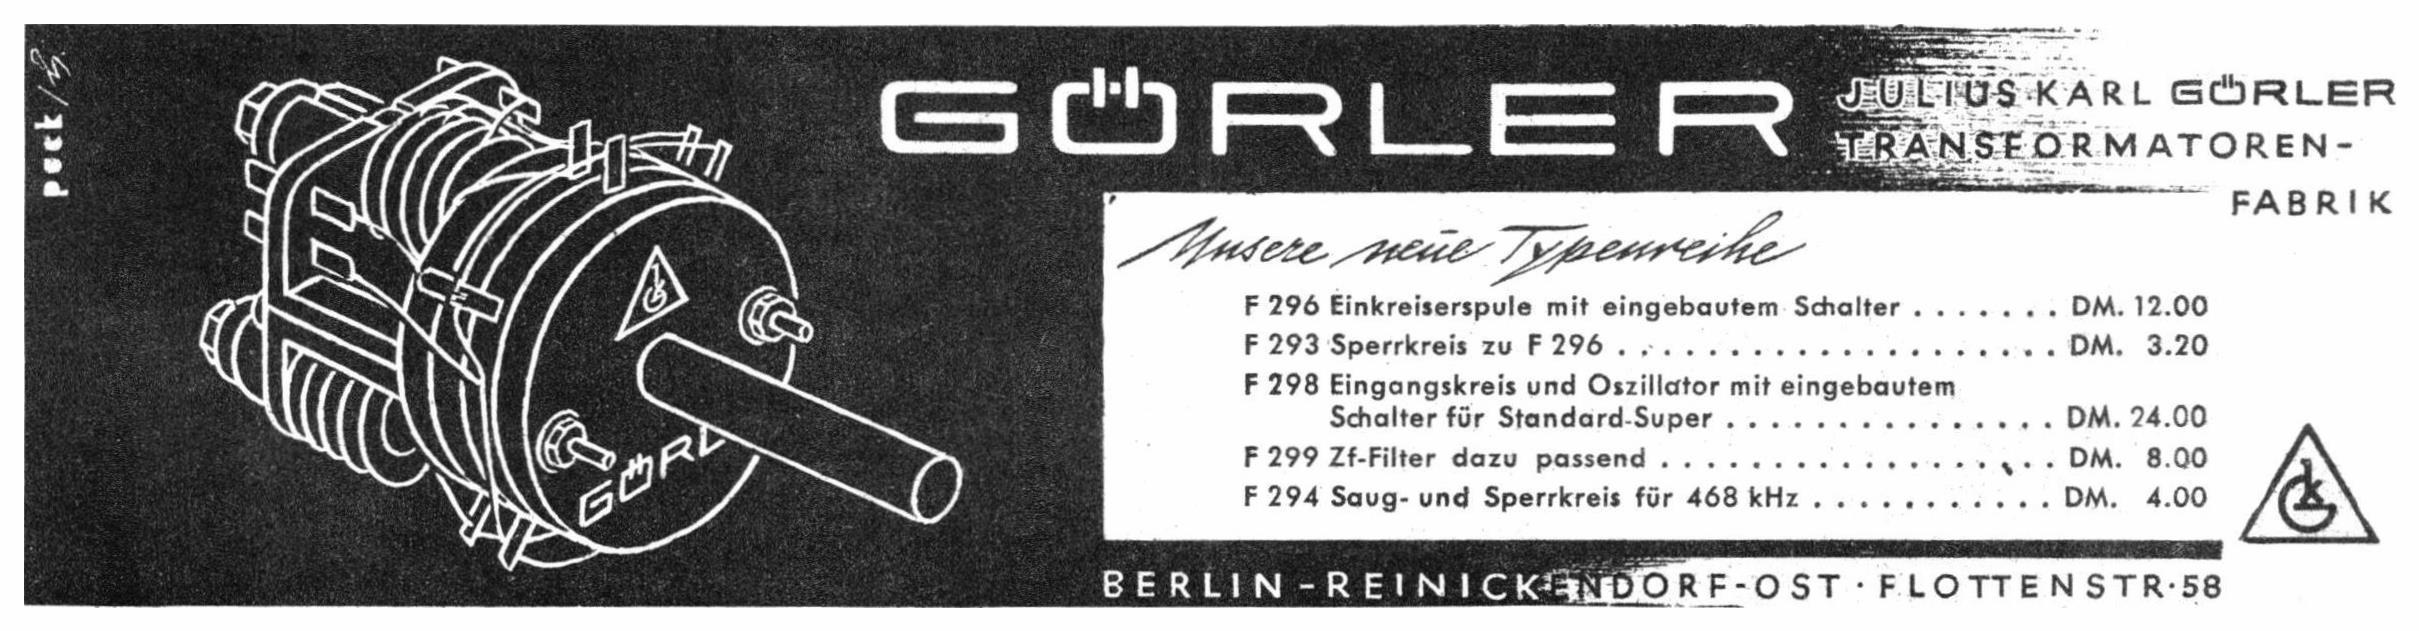 Goerler1949 0.jpg